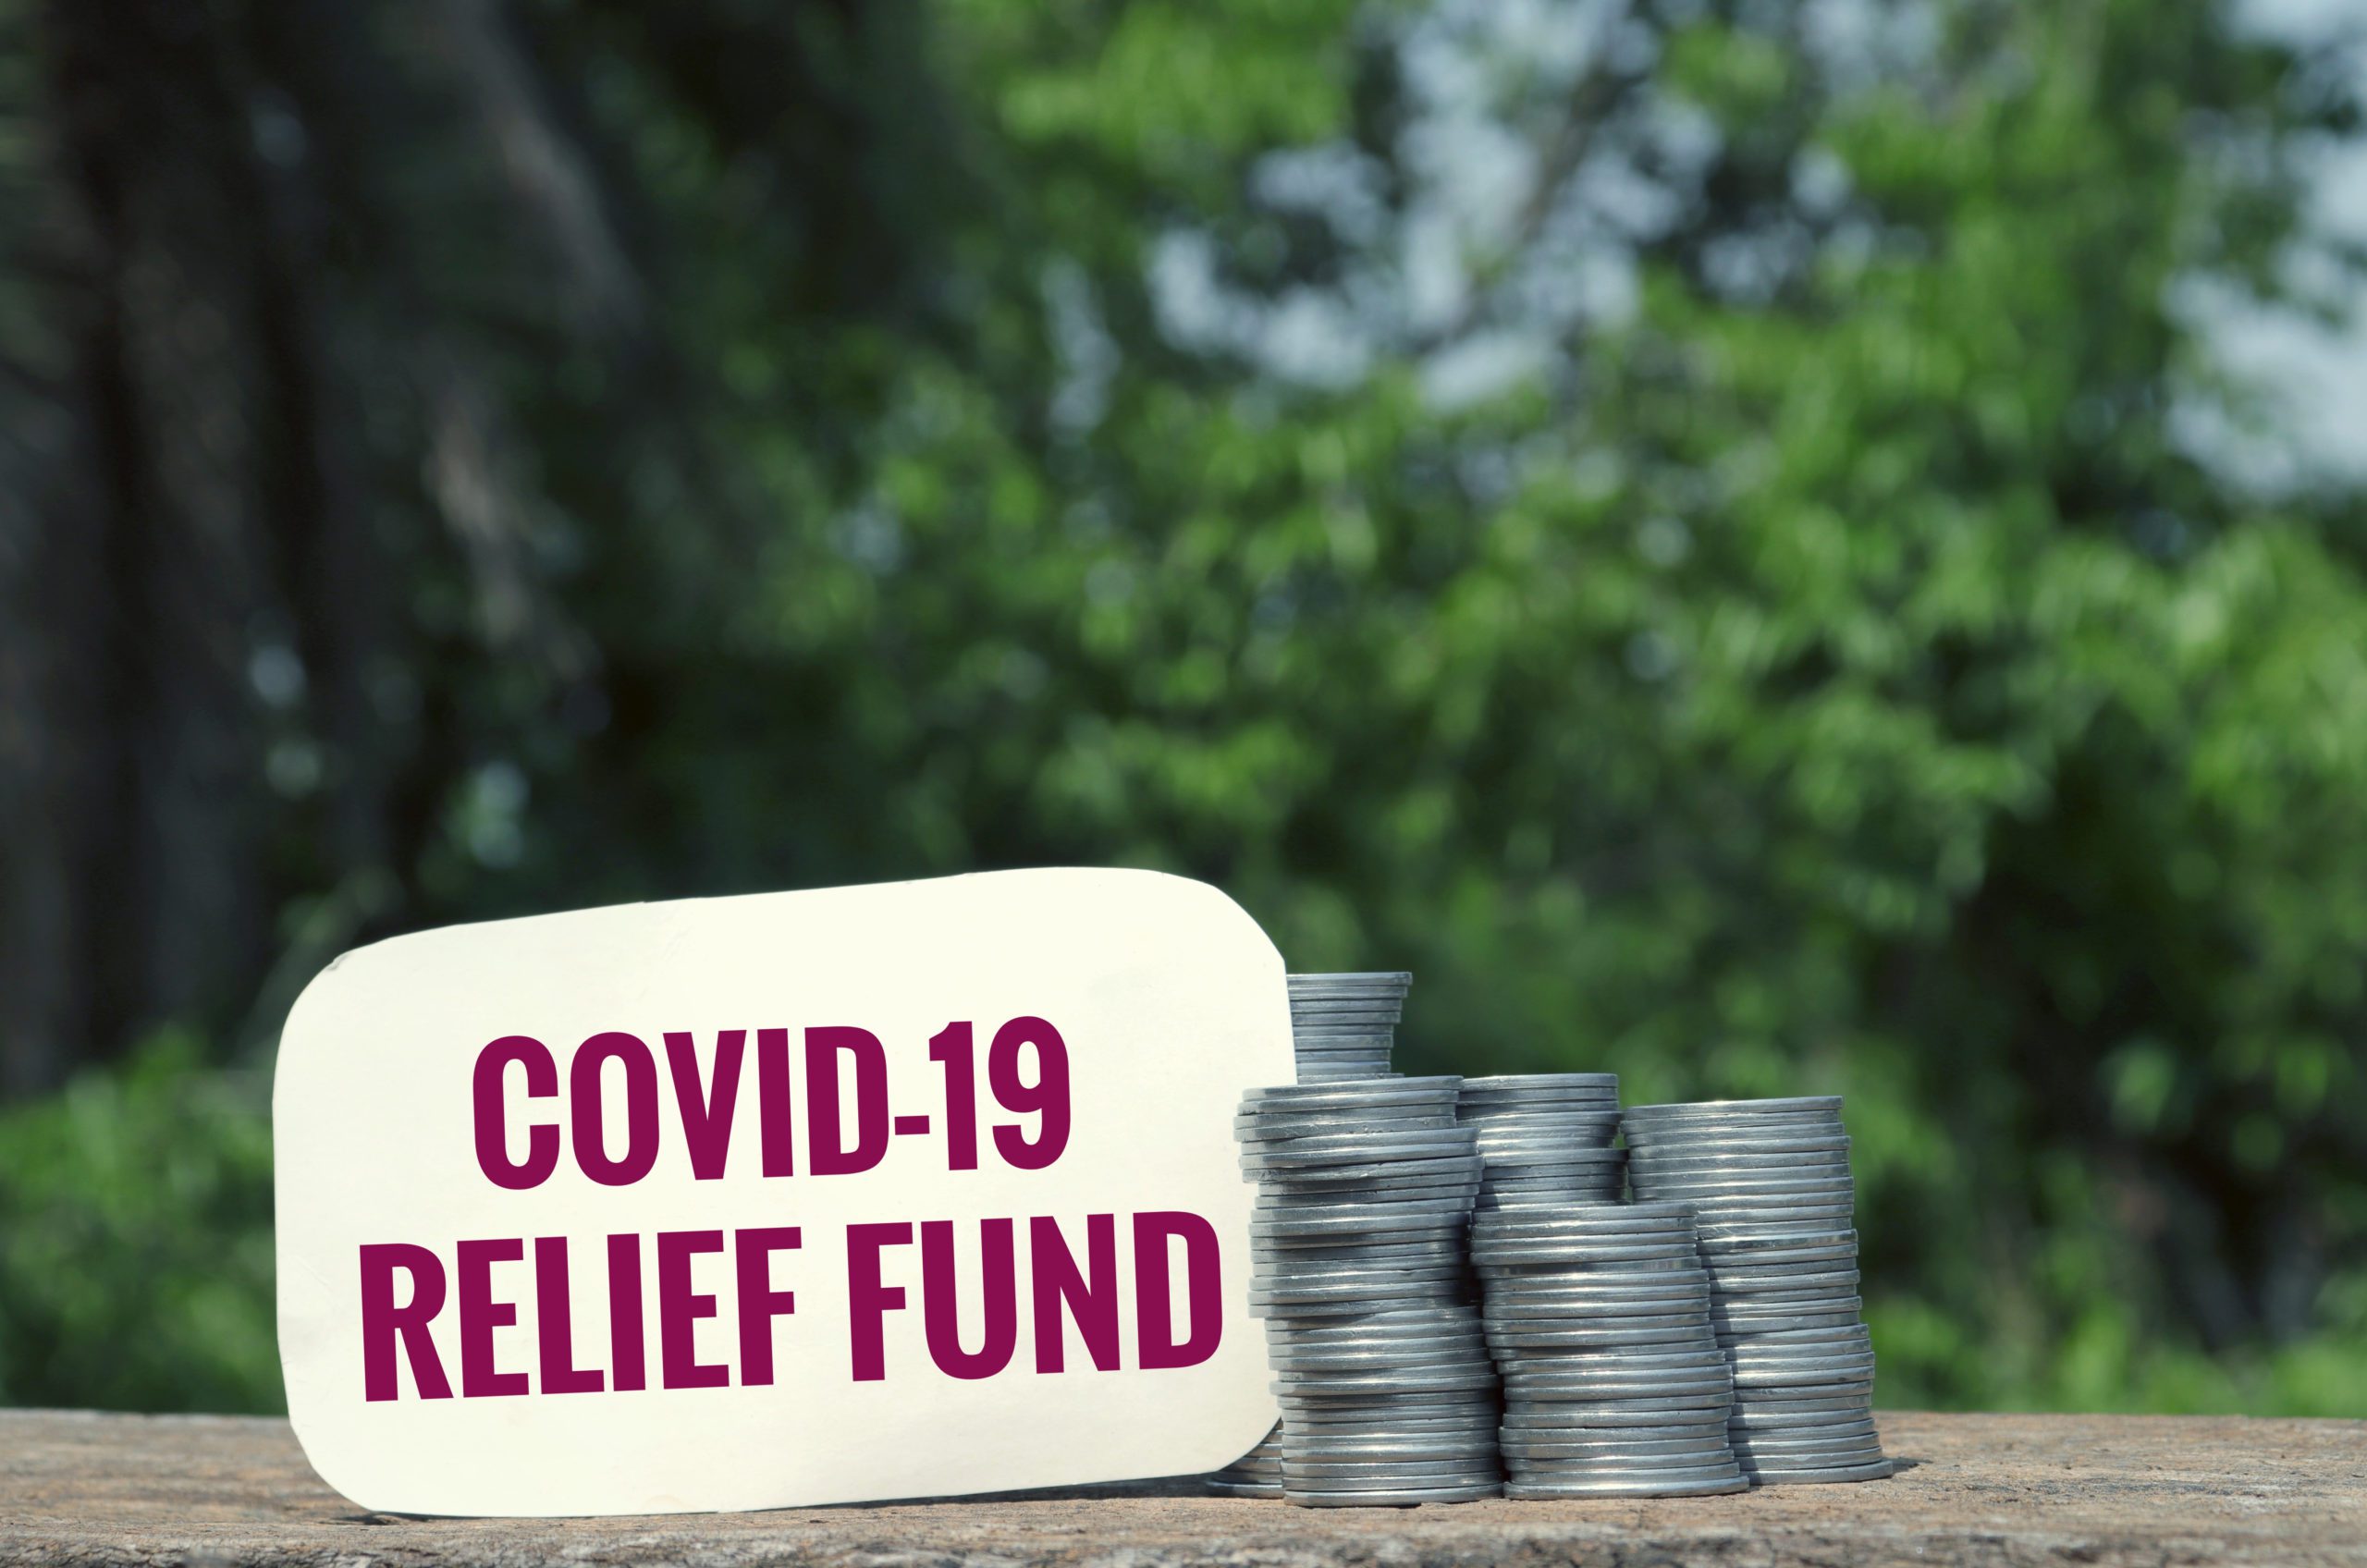 COVID relief fund